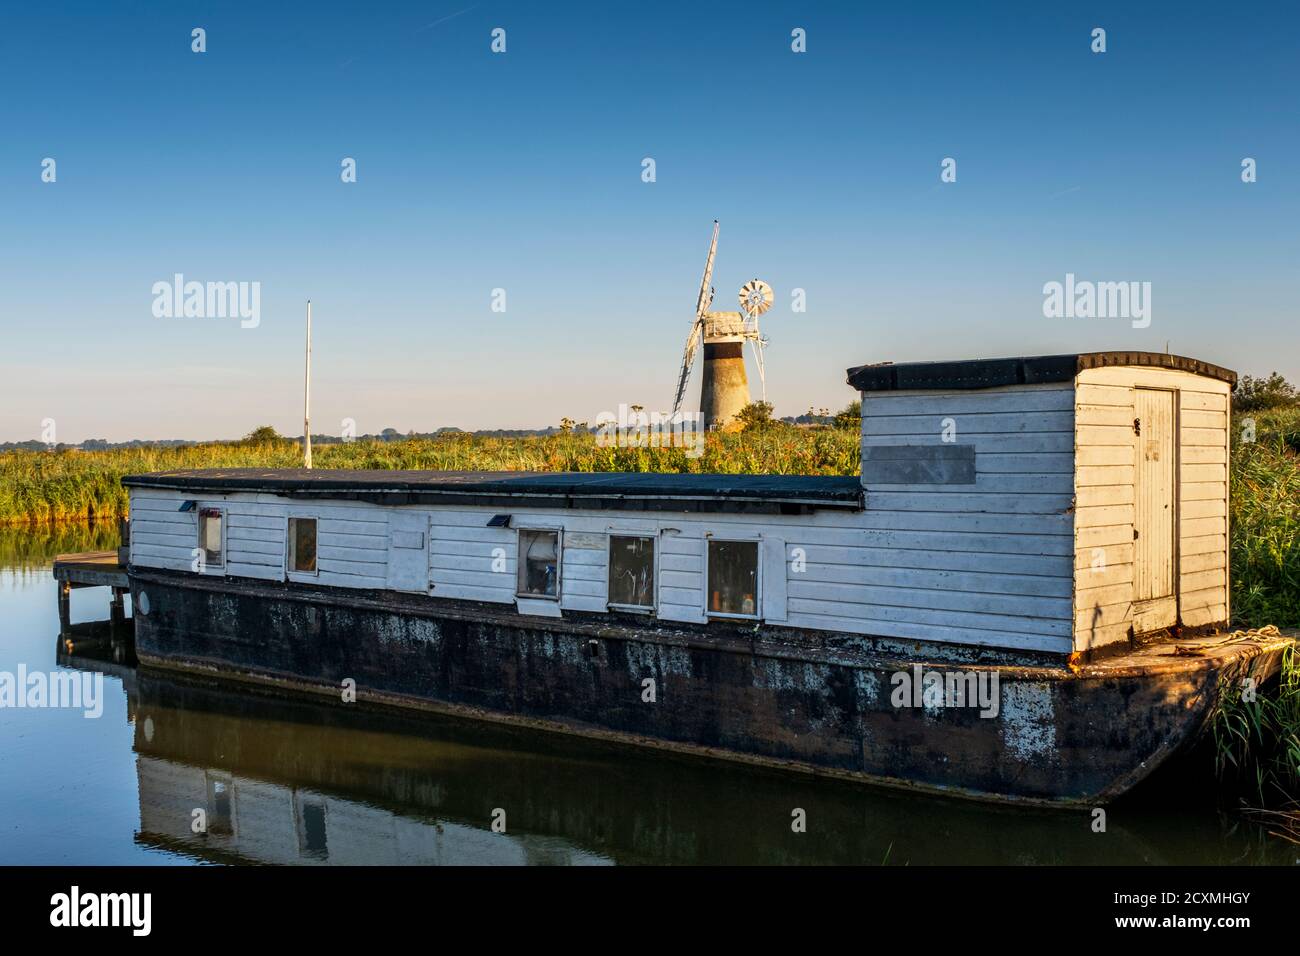 Hausboot auf dem Fluss Thurne mit St Benet's Level Drainage Mill dahinter. Norfolk Broads, Norfolk, England. Stockfoto